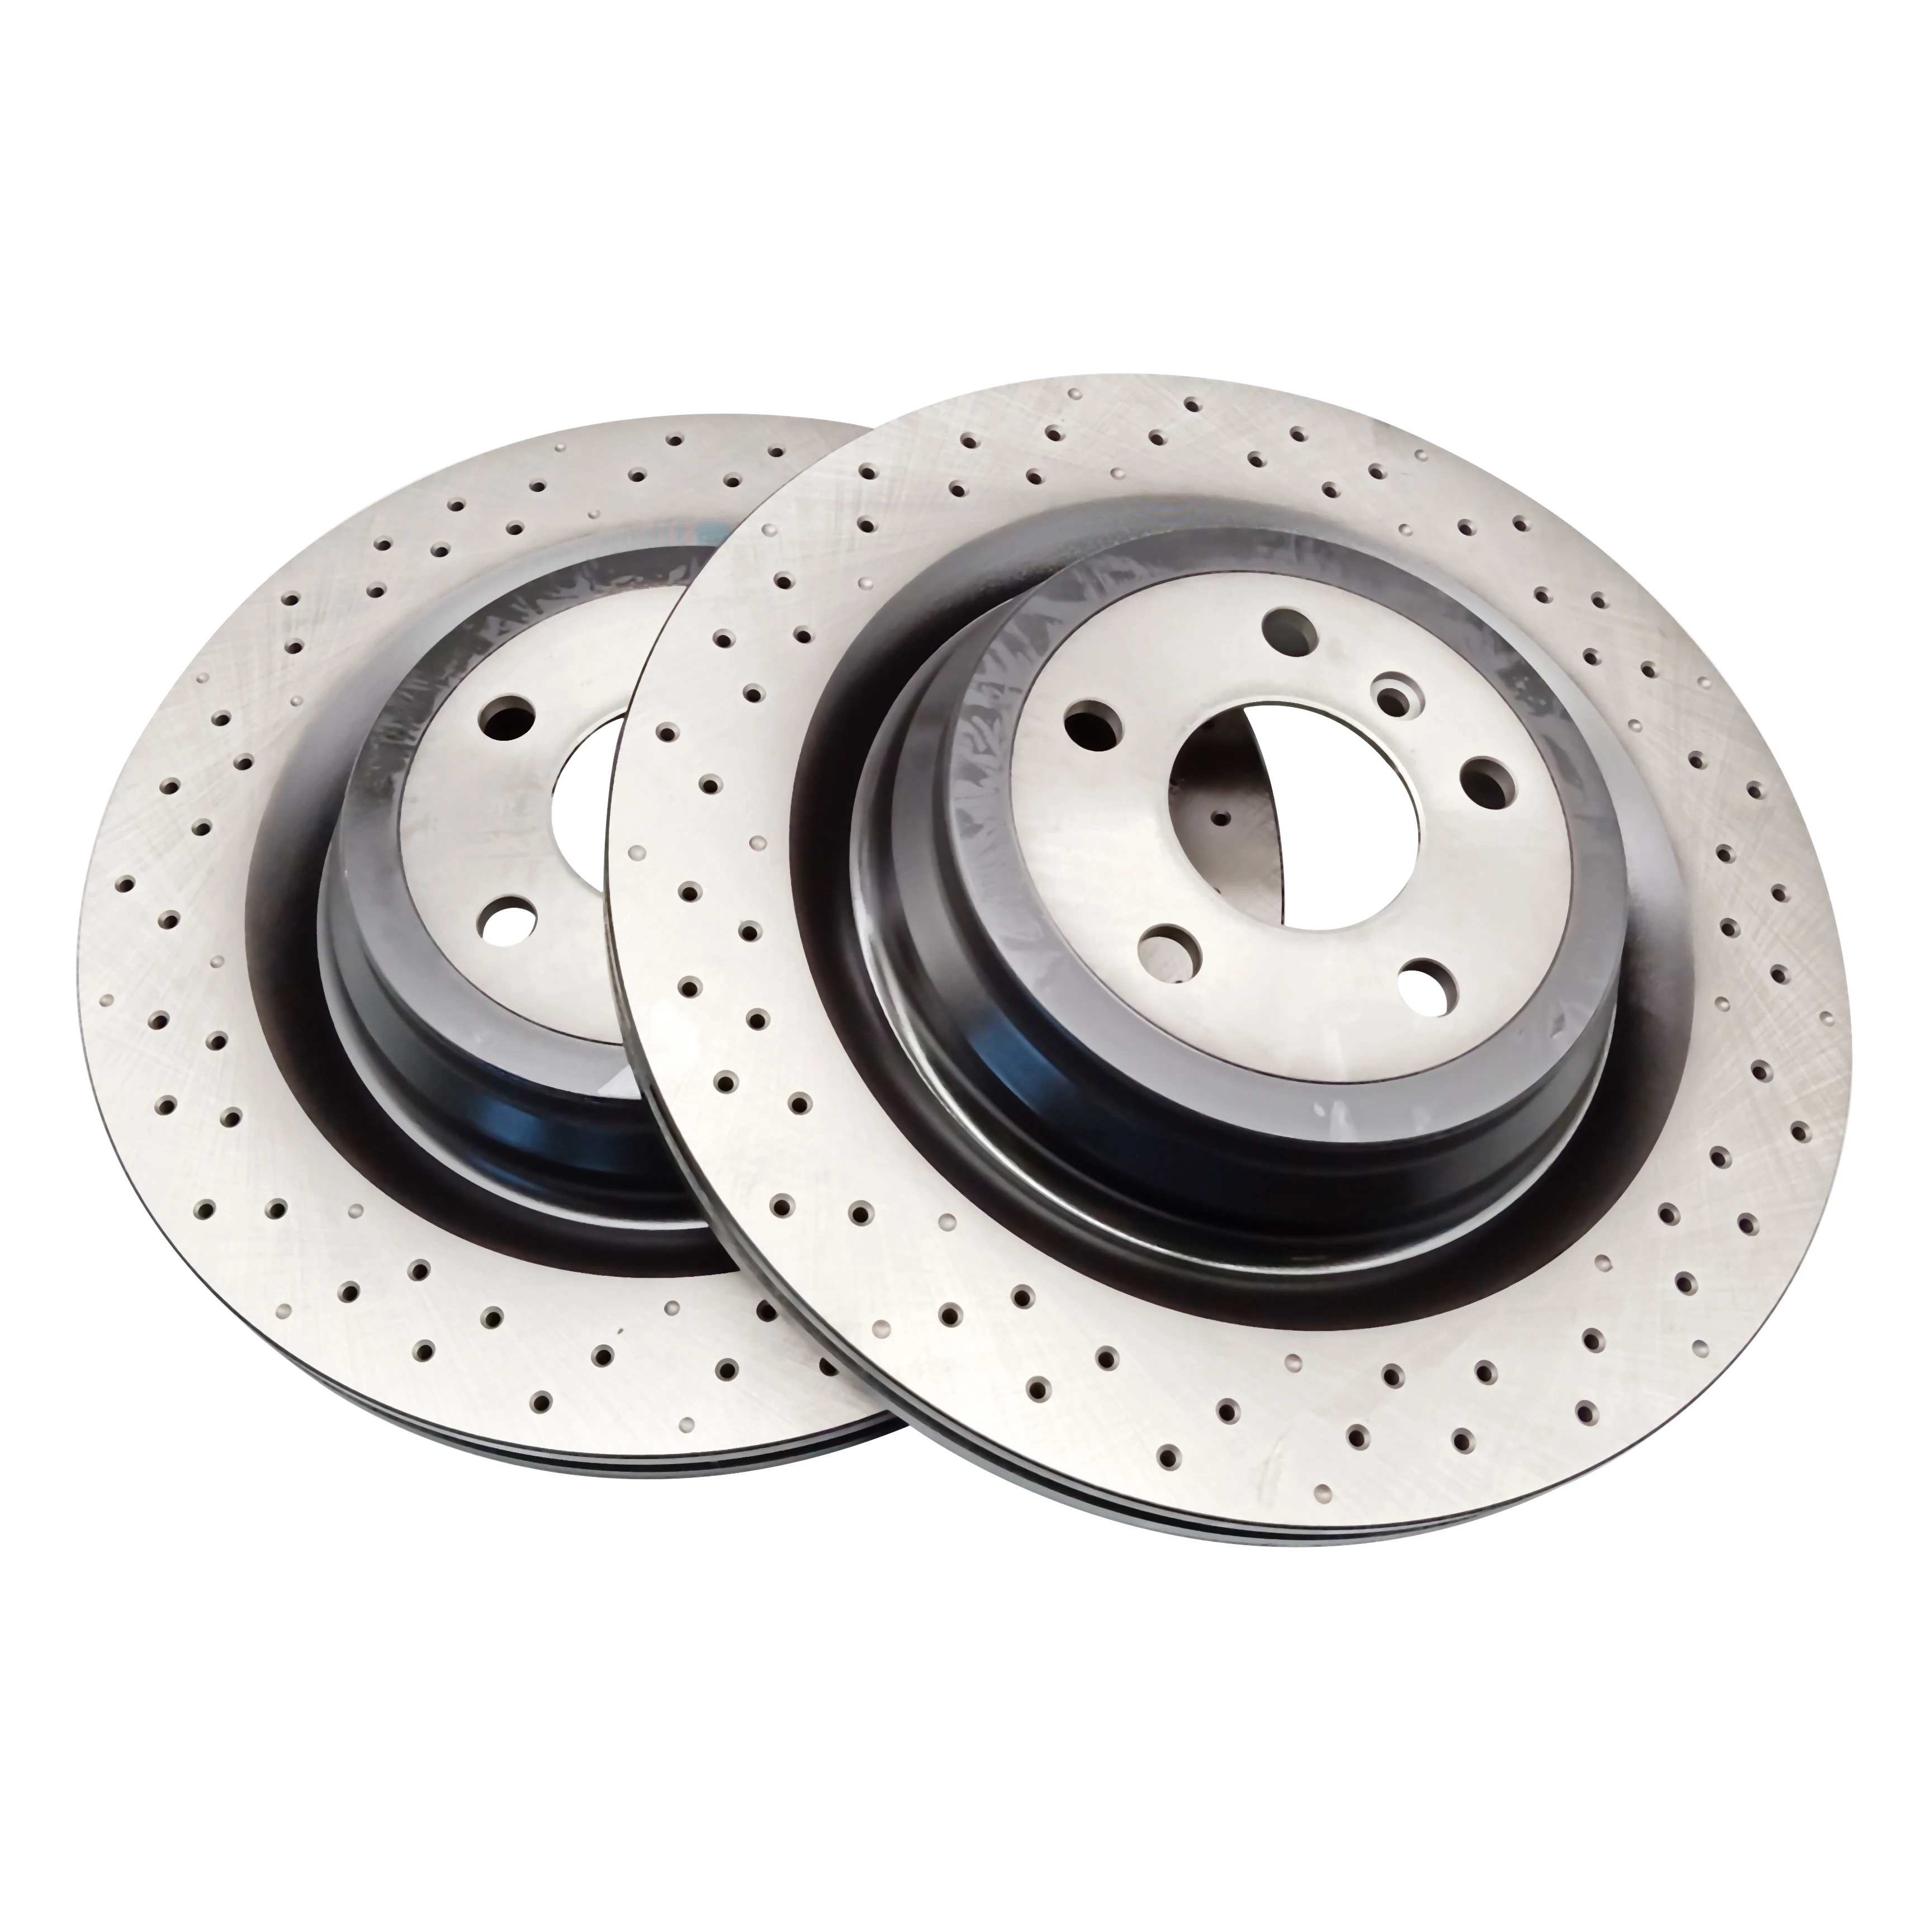 
Auto brake disc for kia brake disk rotor 